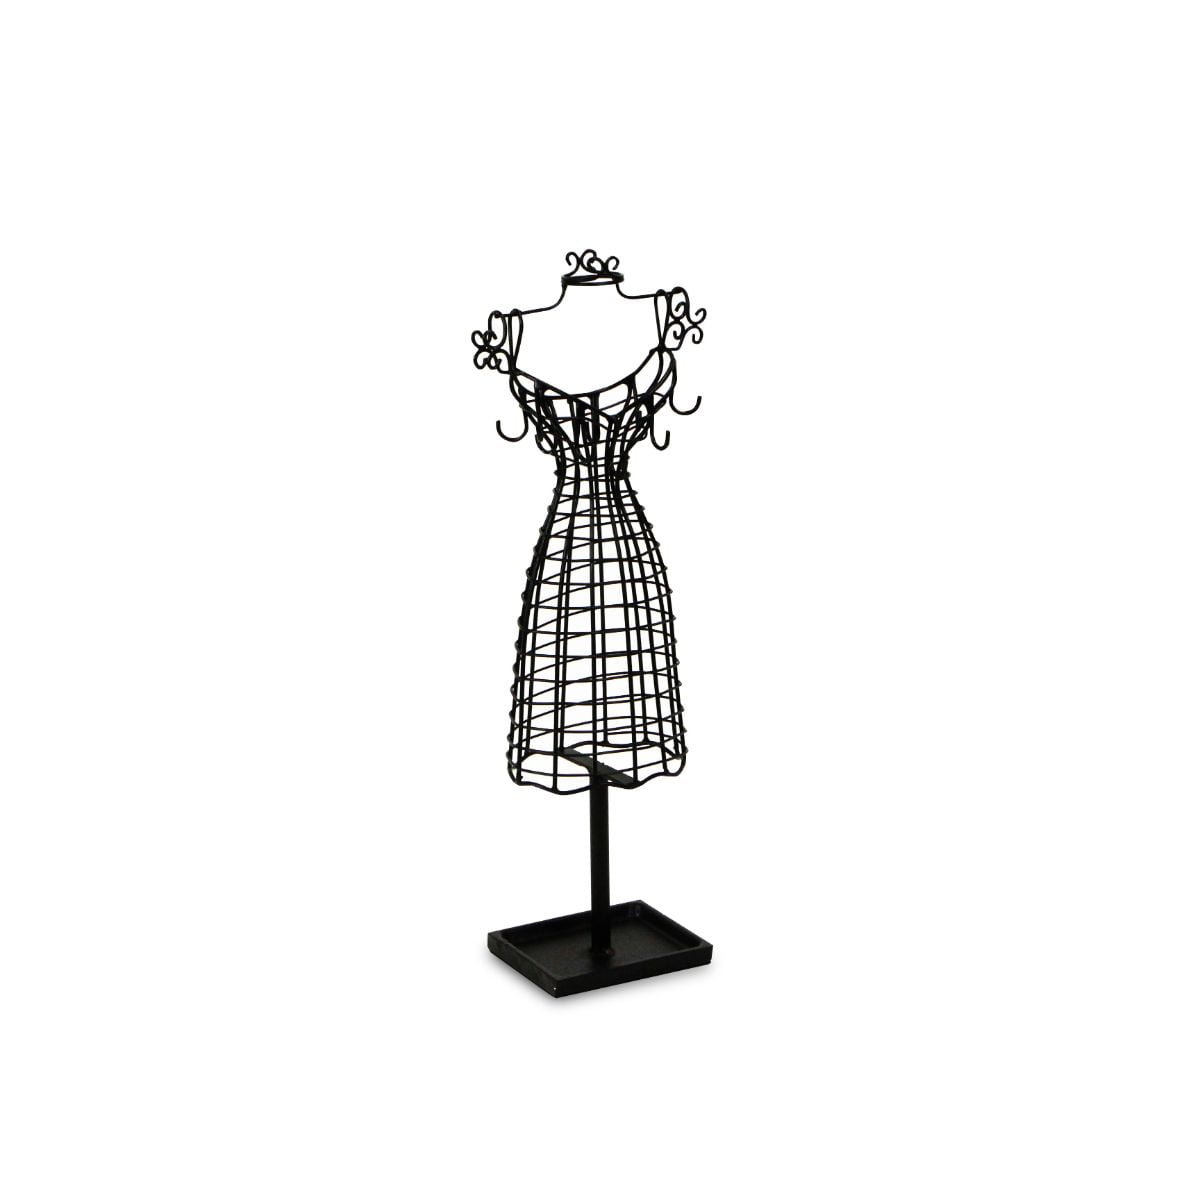 Vintage Metal Dress Form Mannequin Sew Dressmaker Decorative Display Functional 